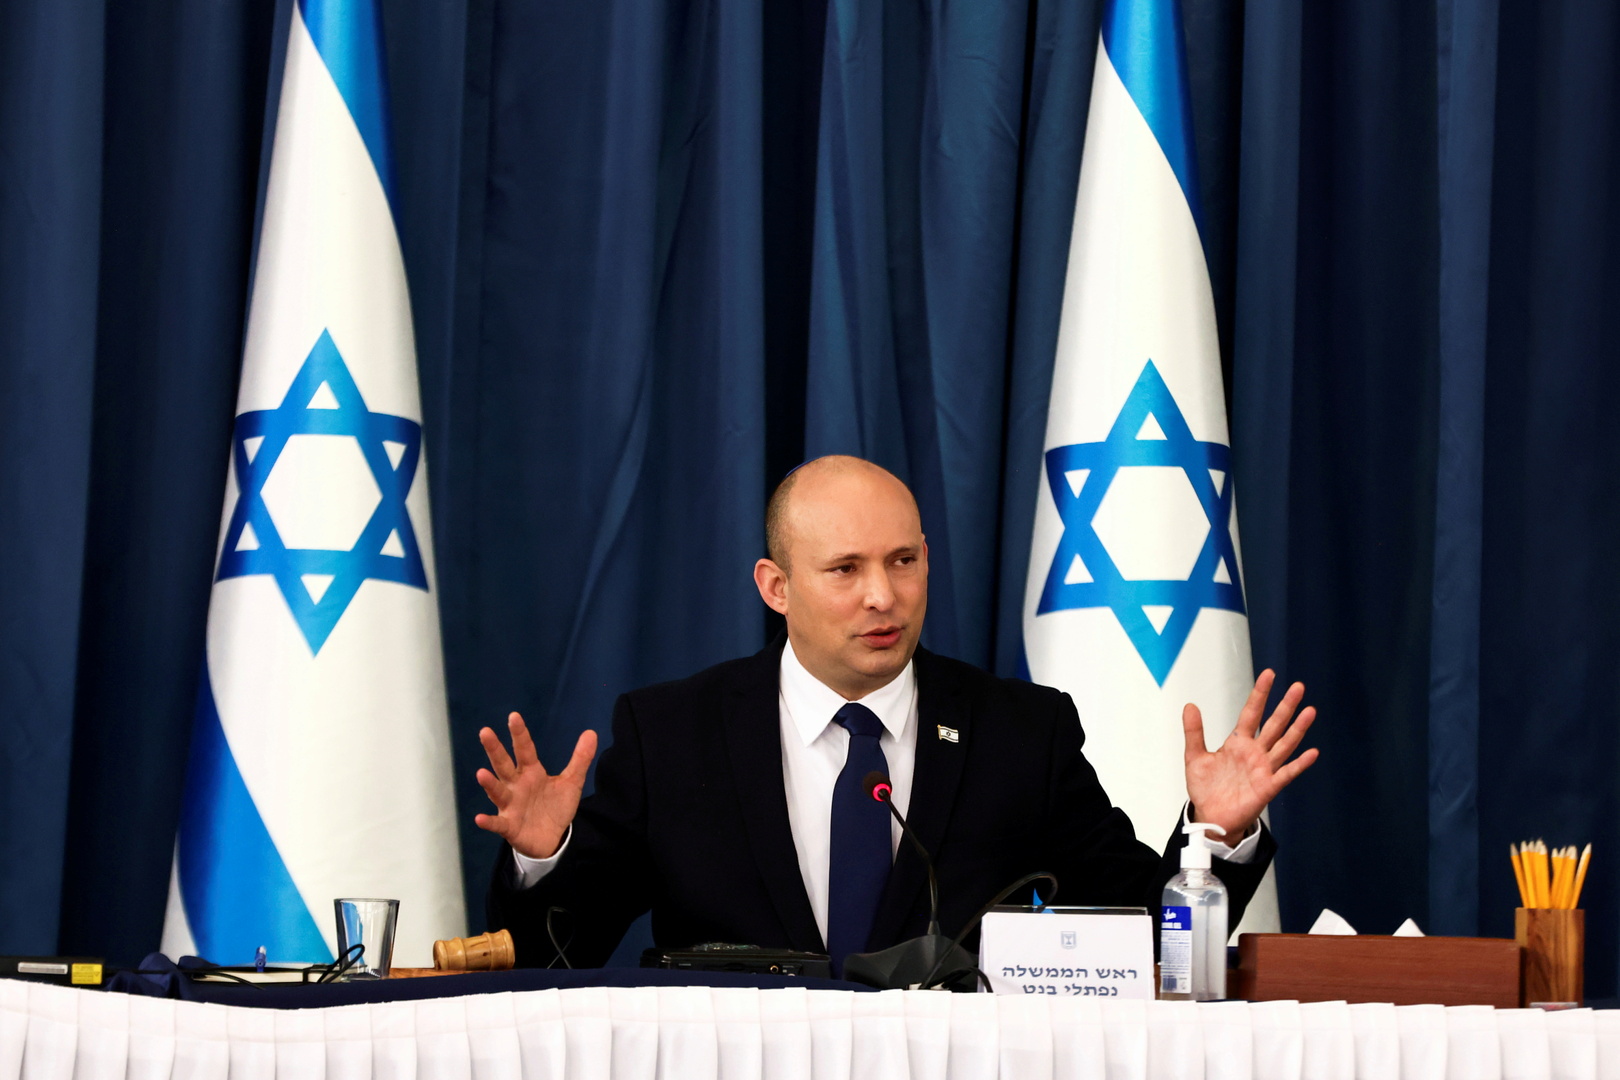 بينيت: عدم قدرة إسرائيل على شراء صواريخ للقبة الحديدية أمر خطير